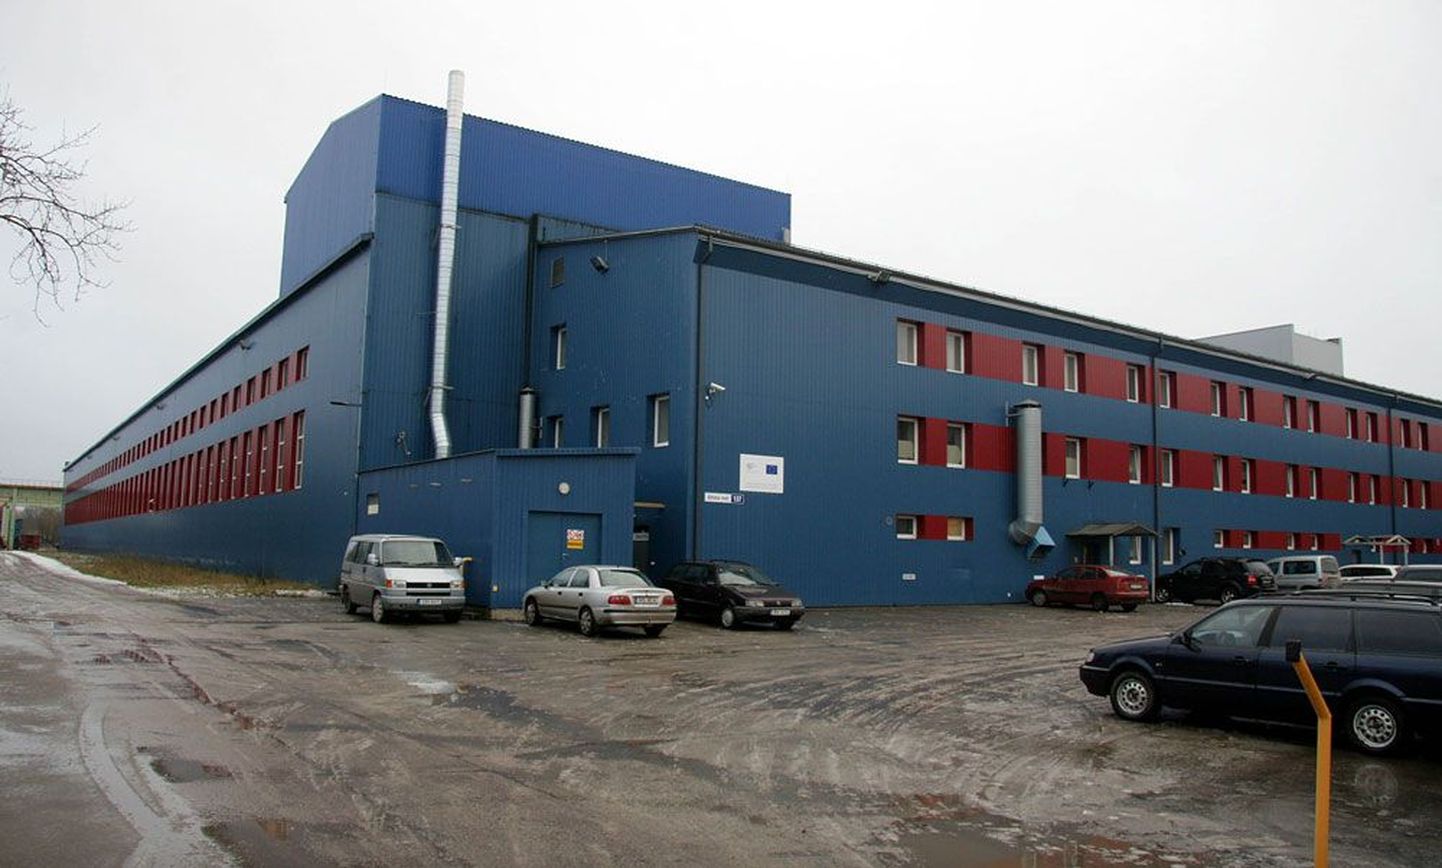 Viru Metallelemendi tehases töötas veel sel suvel 126 inimest, kellest osa lahkus ise, sadakond sai koondamisteate. Tehase hoone võttis üle uus rentnik.